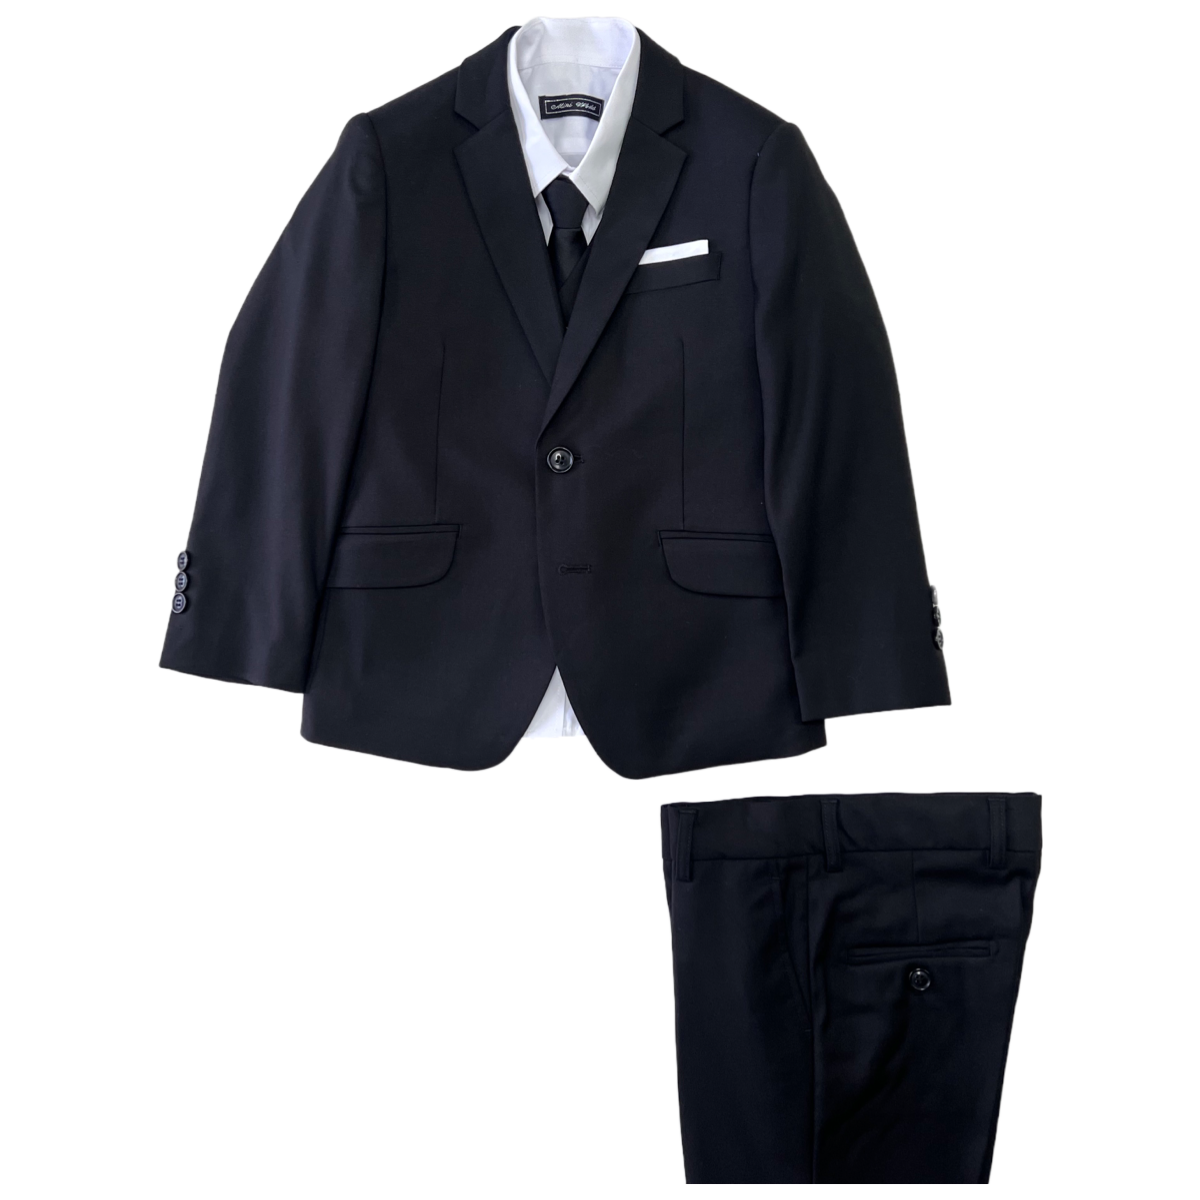 Debonair Slim-Fit Black Suit